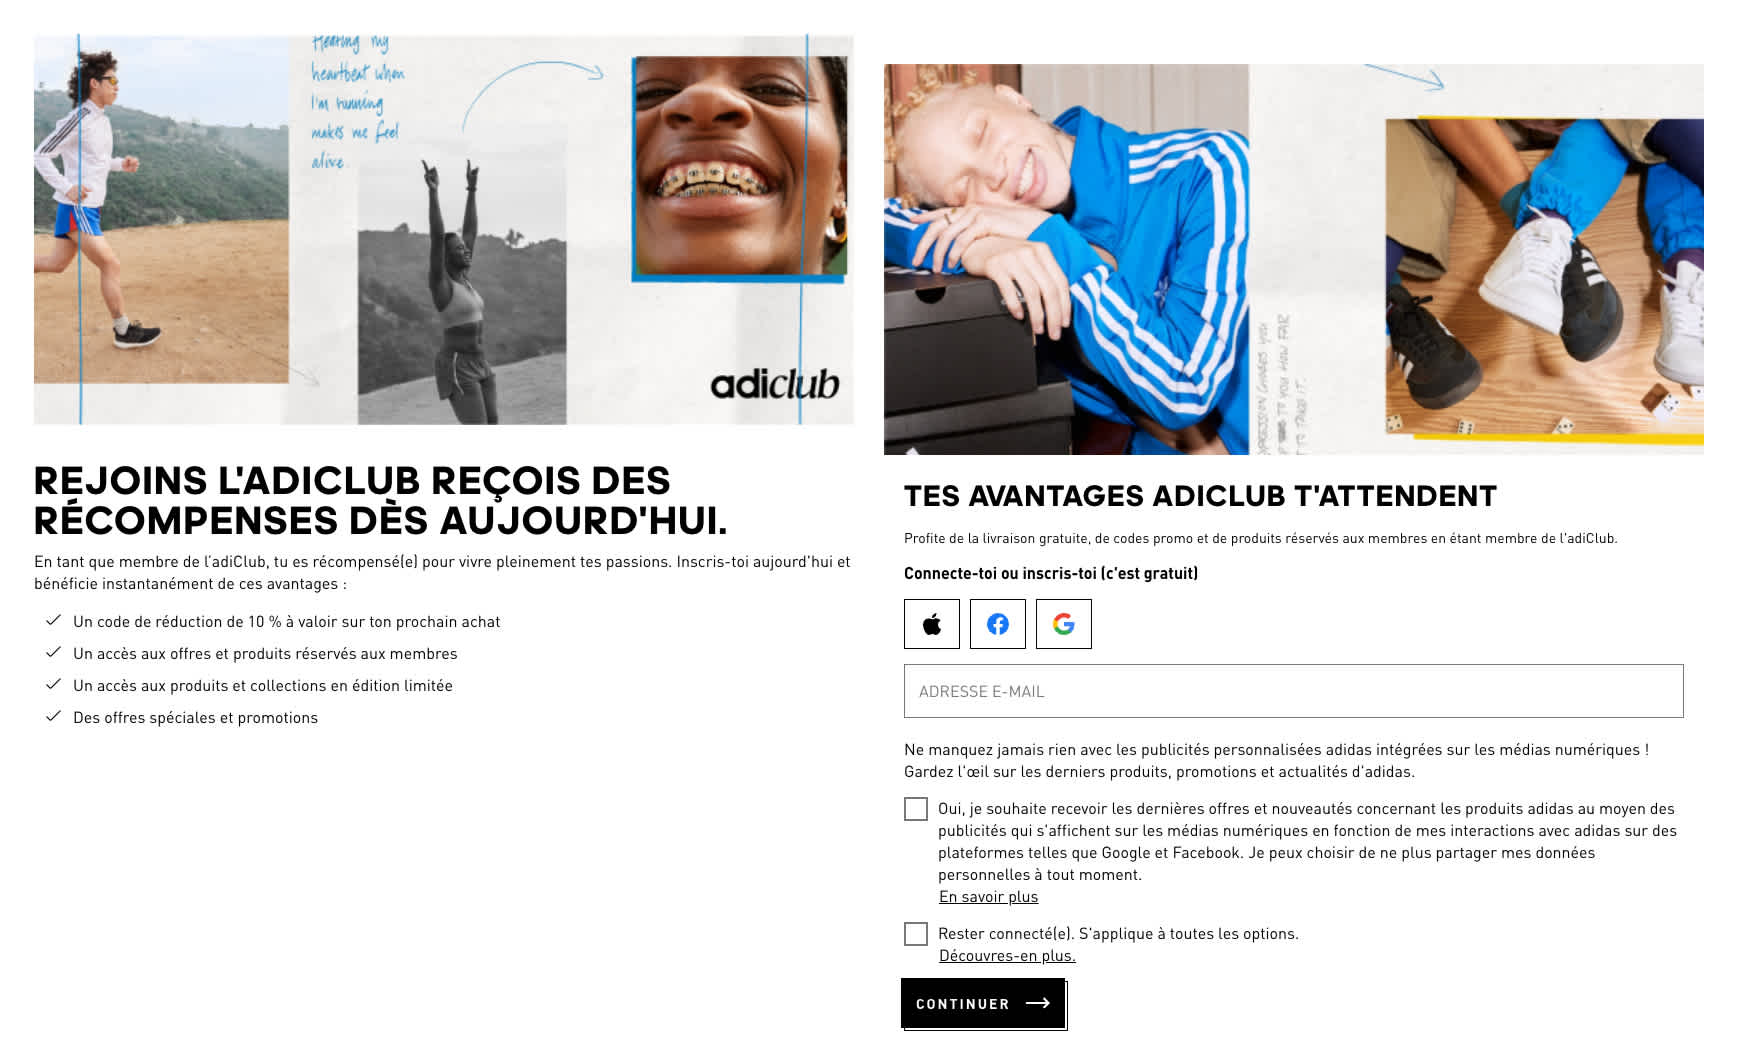 Formulaire d’adhésion au Adiclub d’Adidas